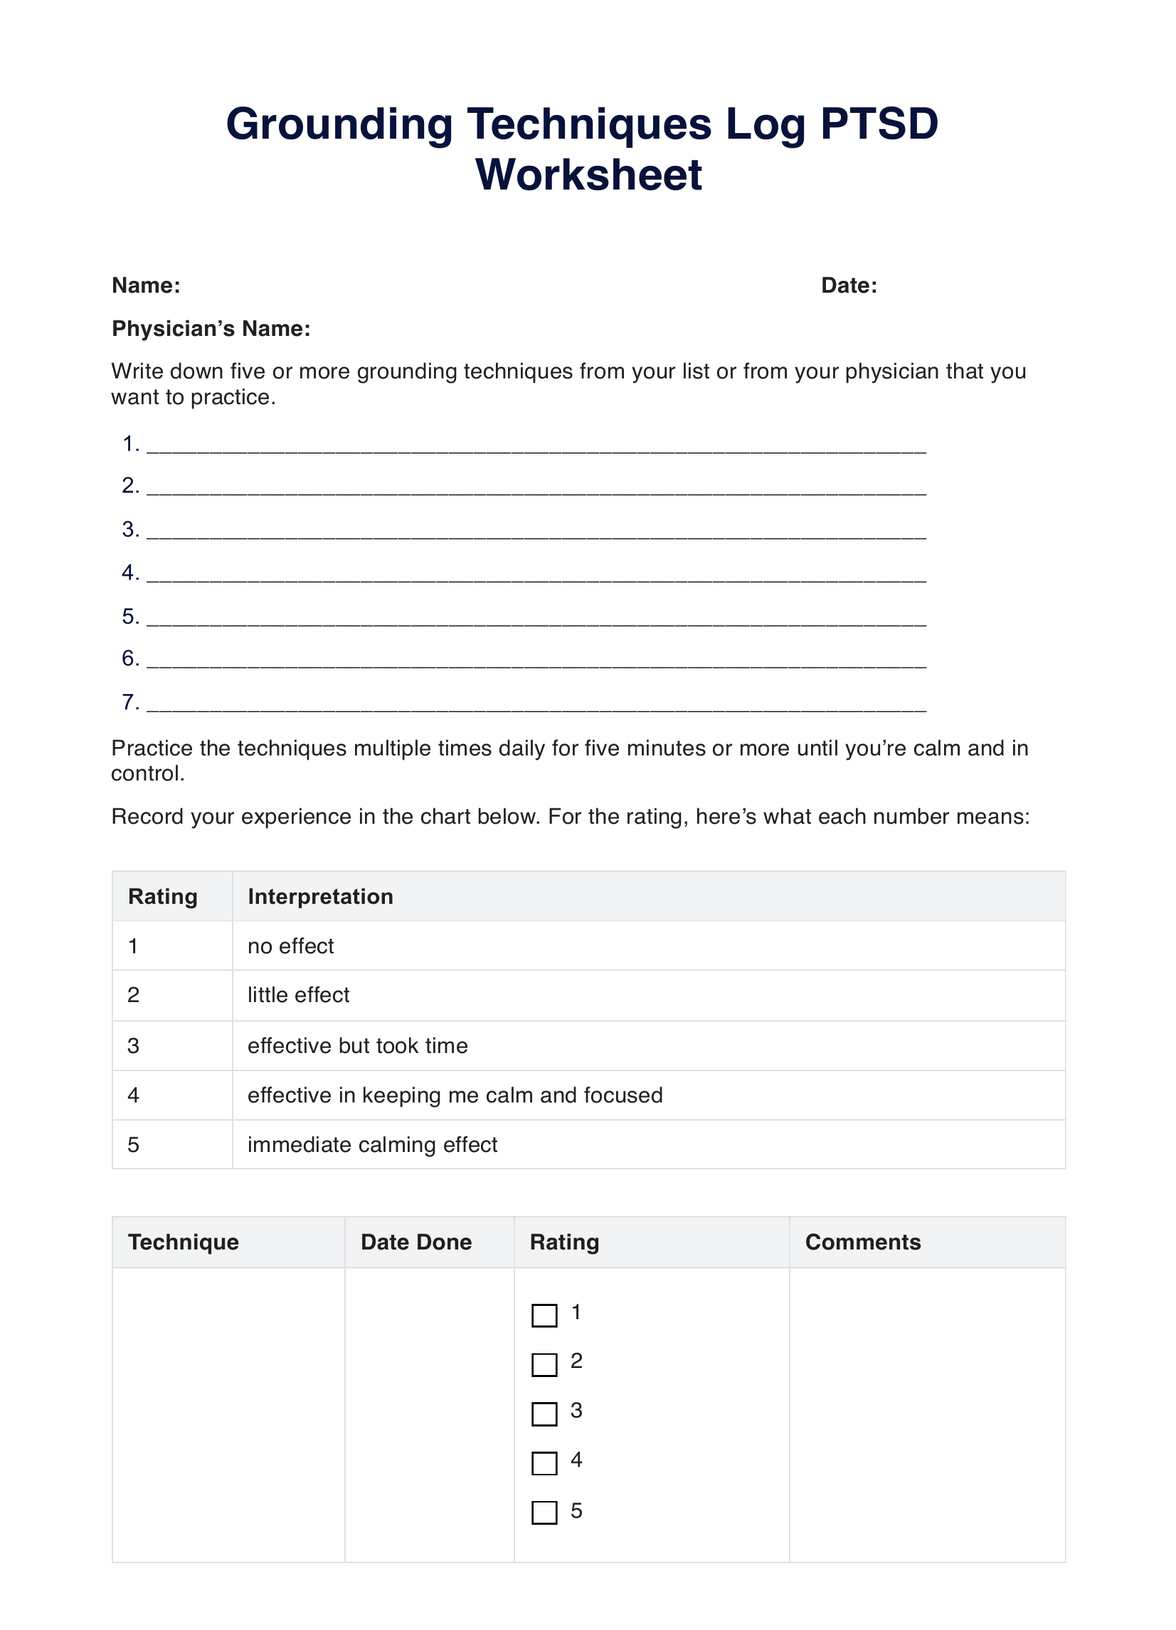 Grounding Techniques Log PTSD Worksheet PDF Example